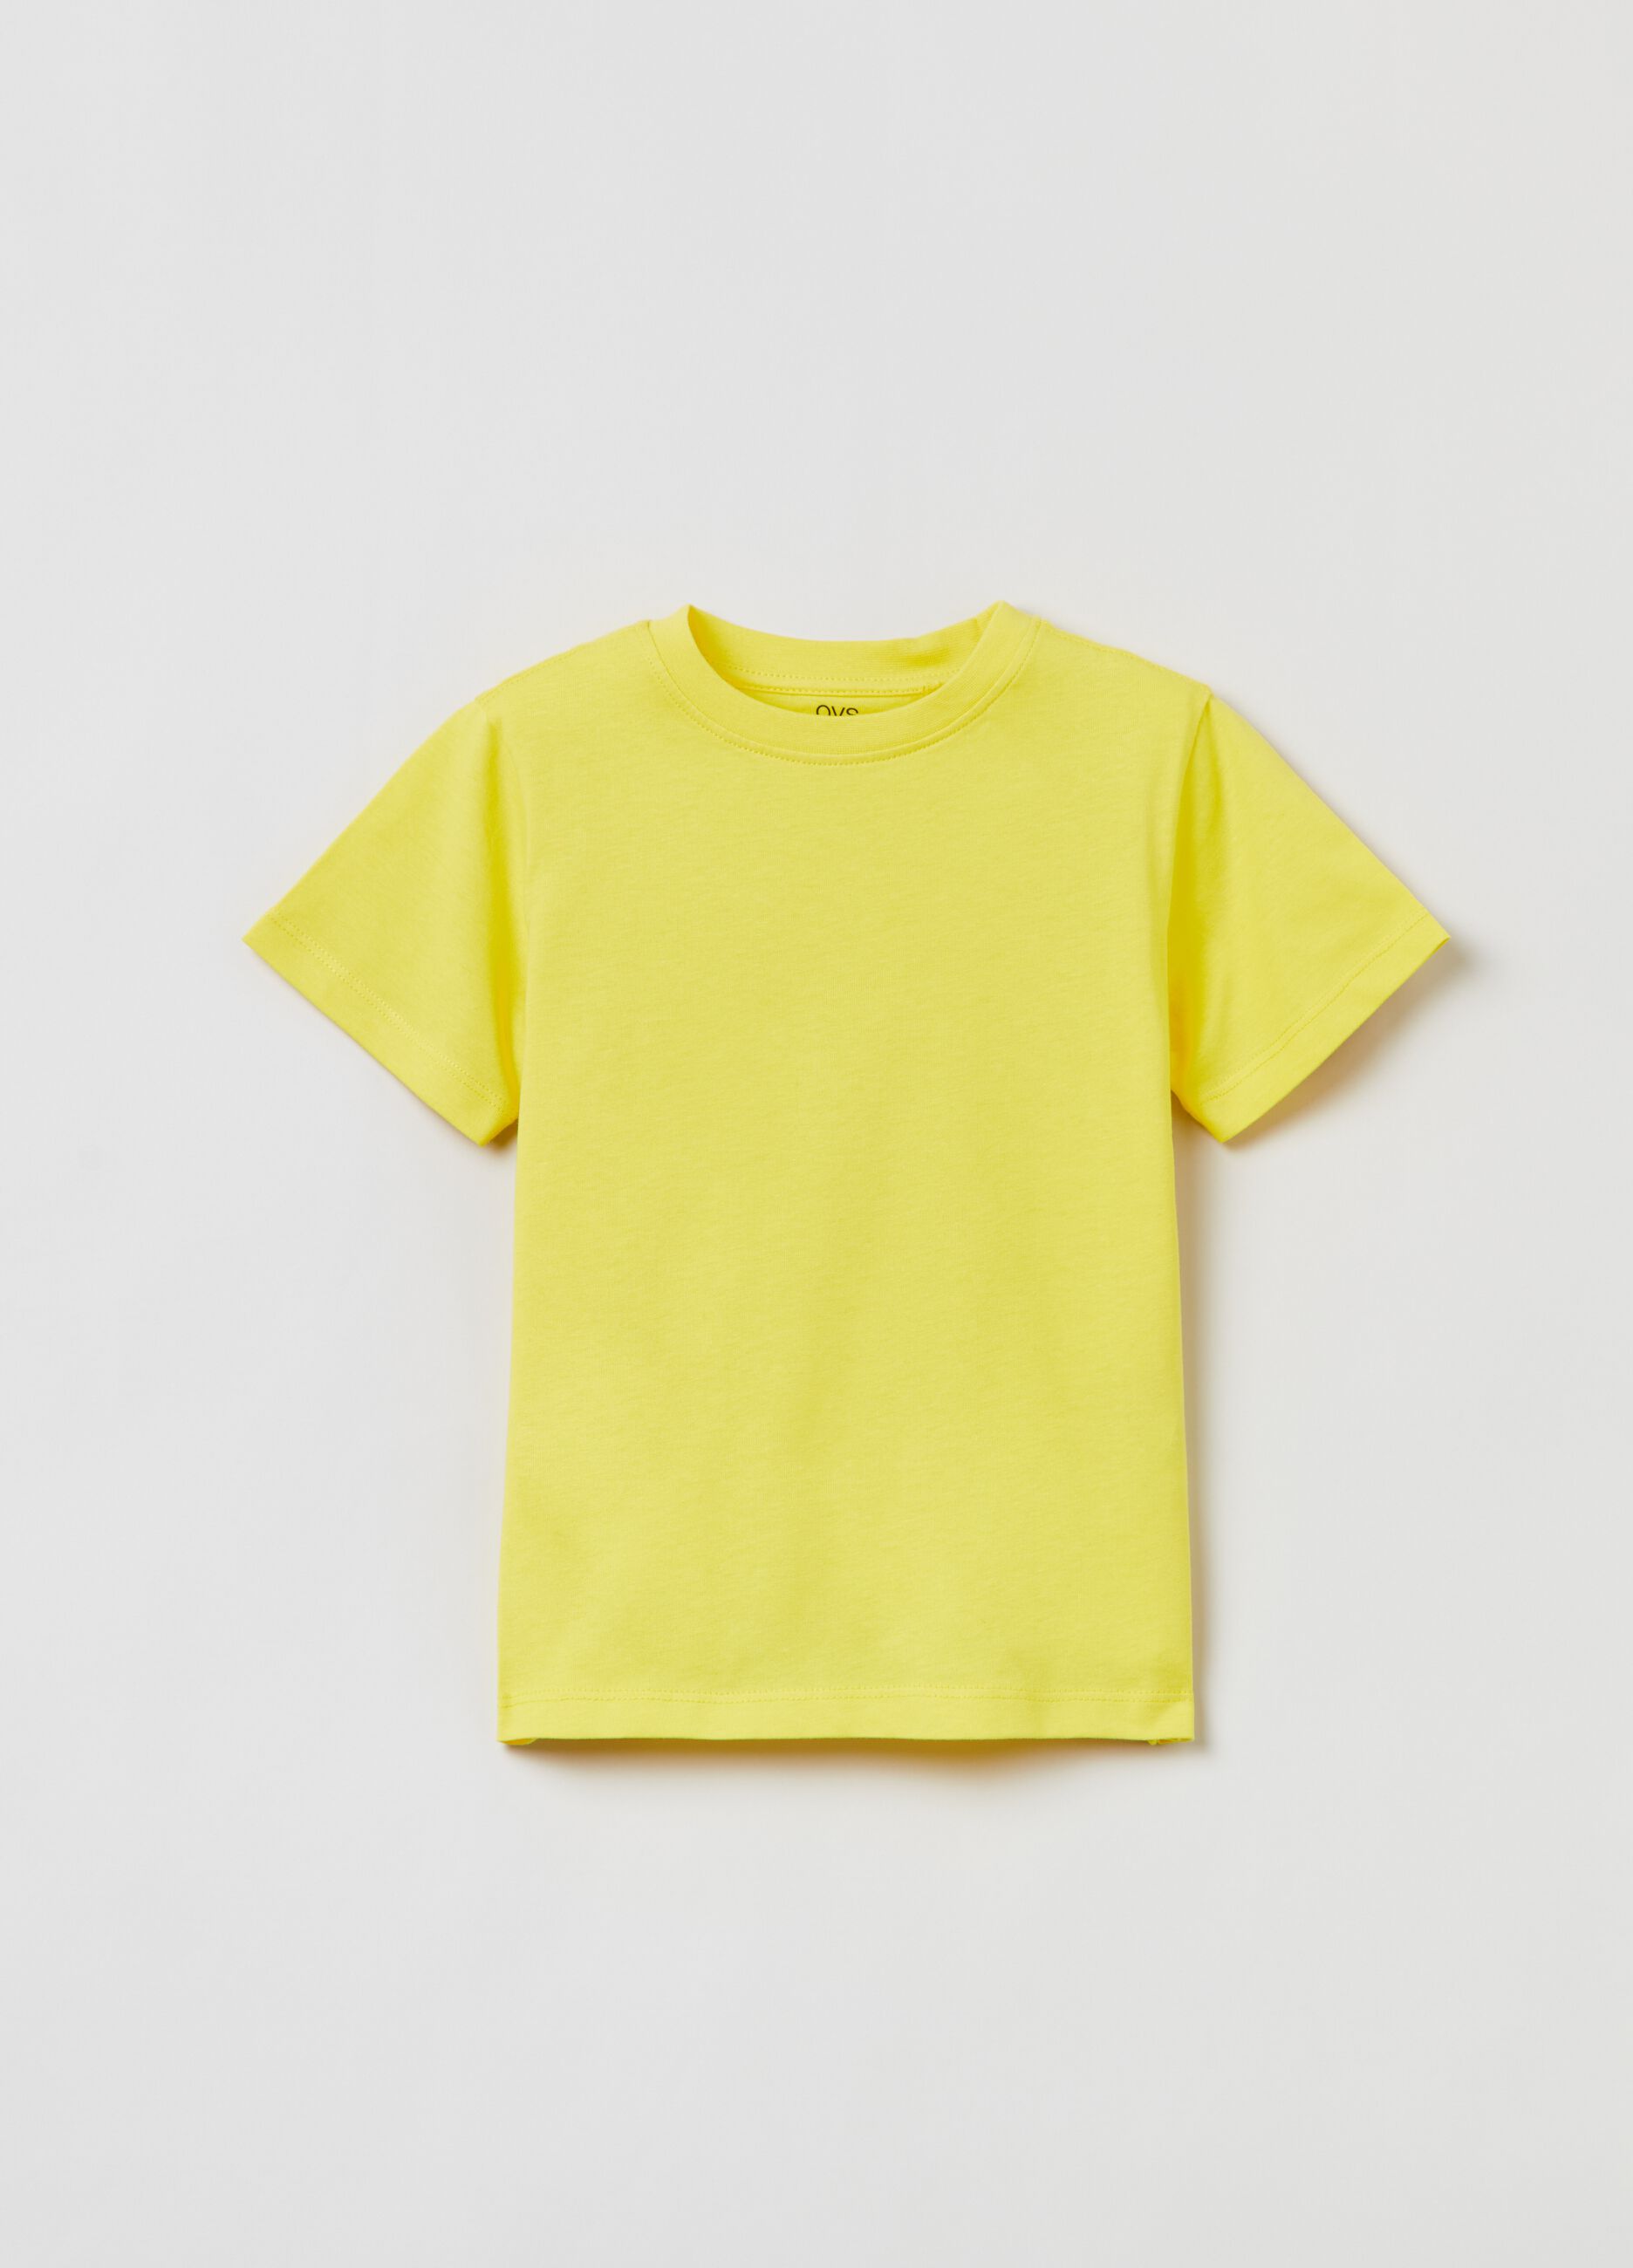 Camiseta Fitness de algodón en color liso.